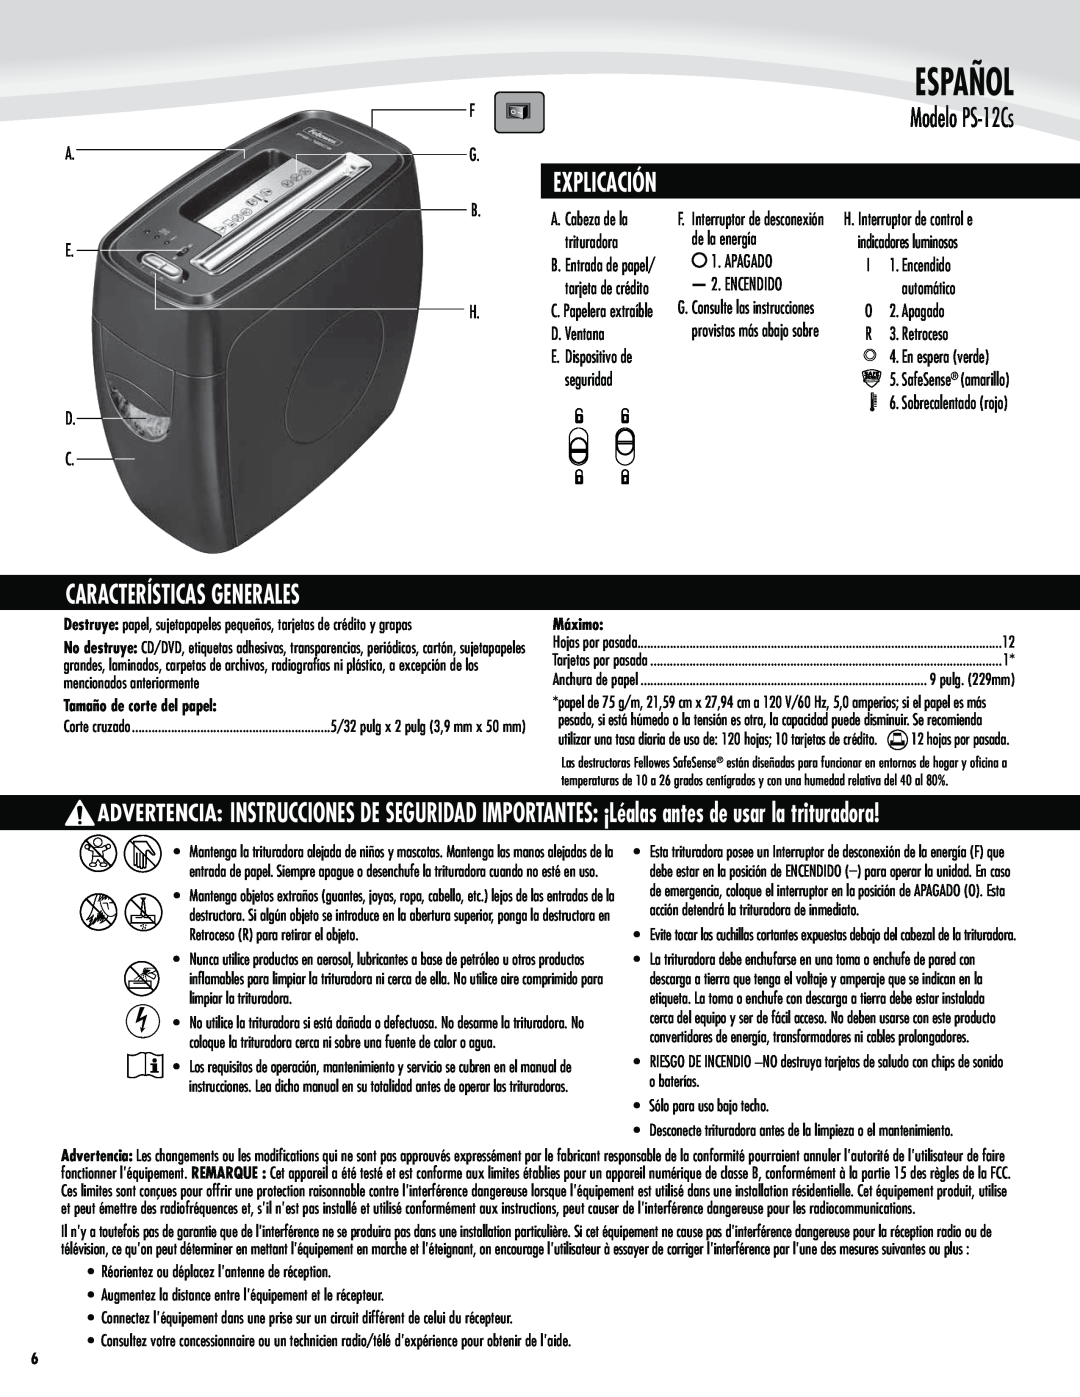 Fellowes manual Explicación, Características Generales, Modelo PS-12Cs, Español 